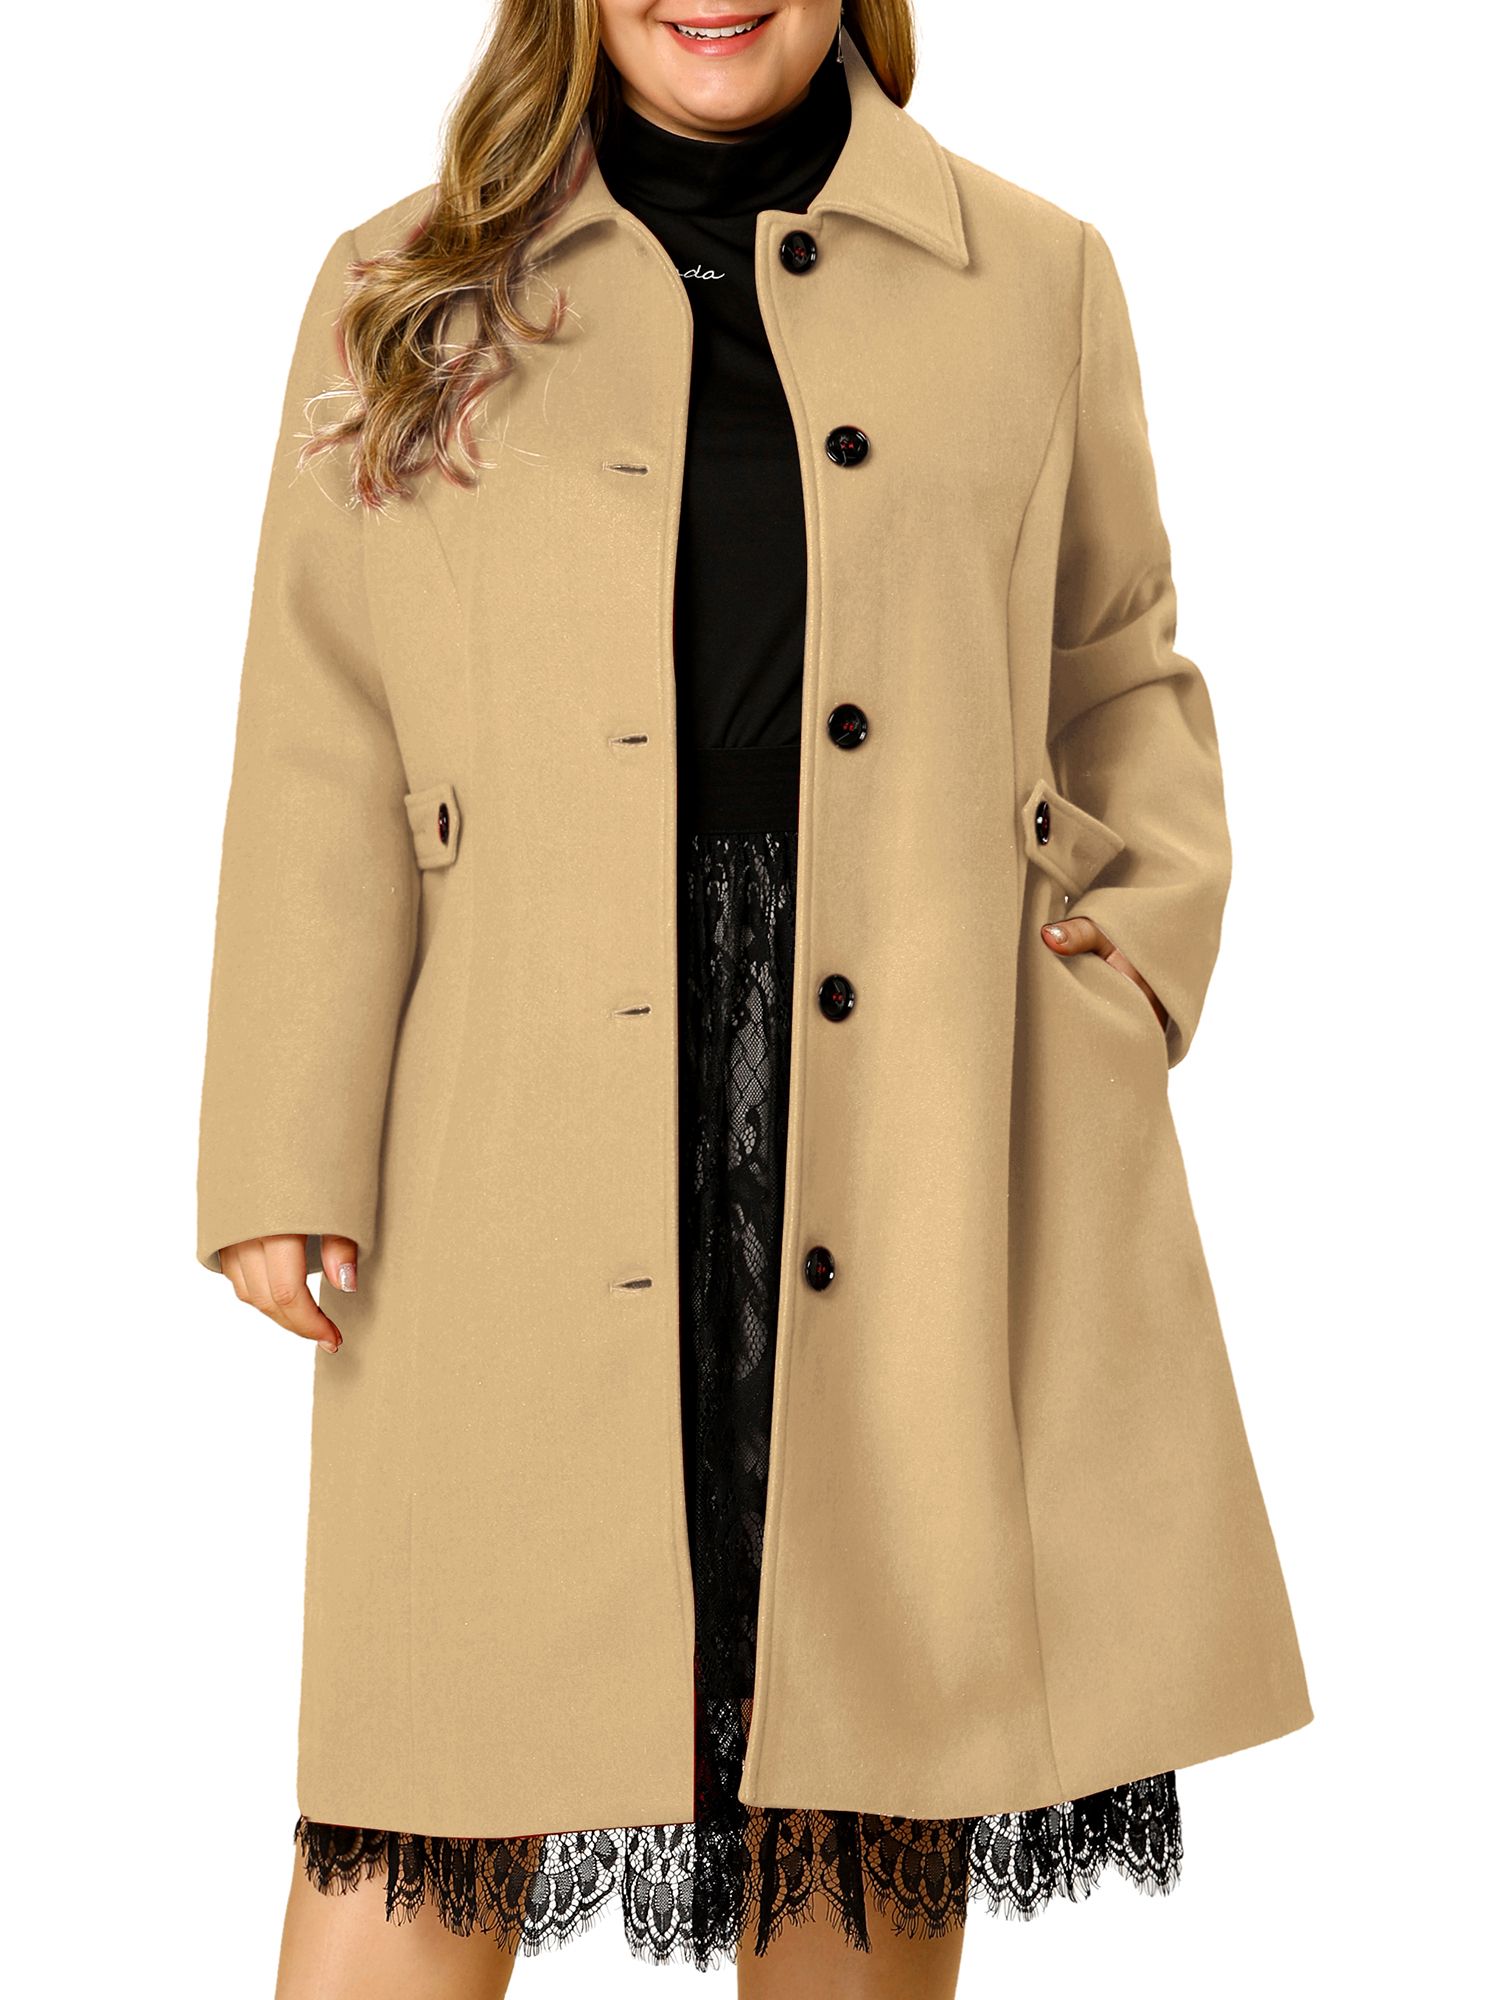 Plus Size Women Thicken Fleece Fur Warm Winter Coat Hooded Parka Jacket/Outwear